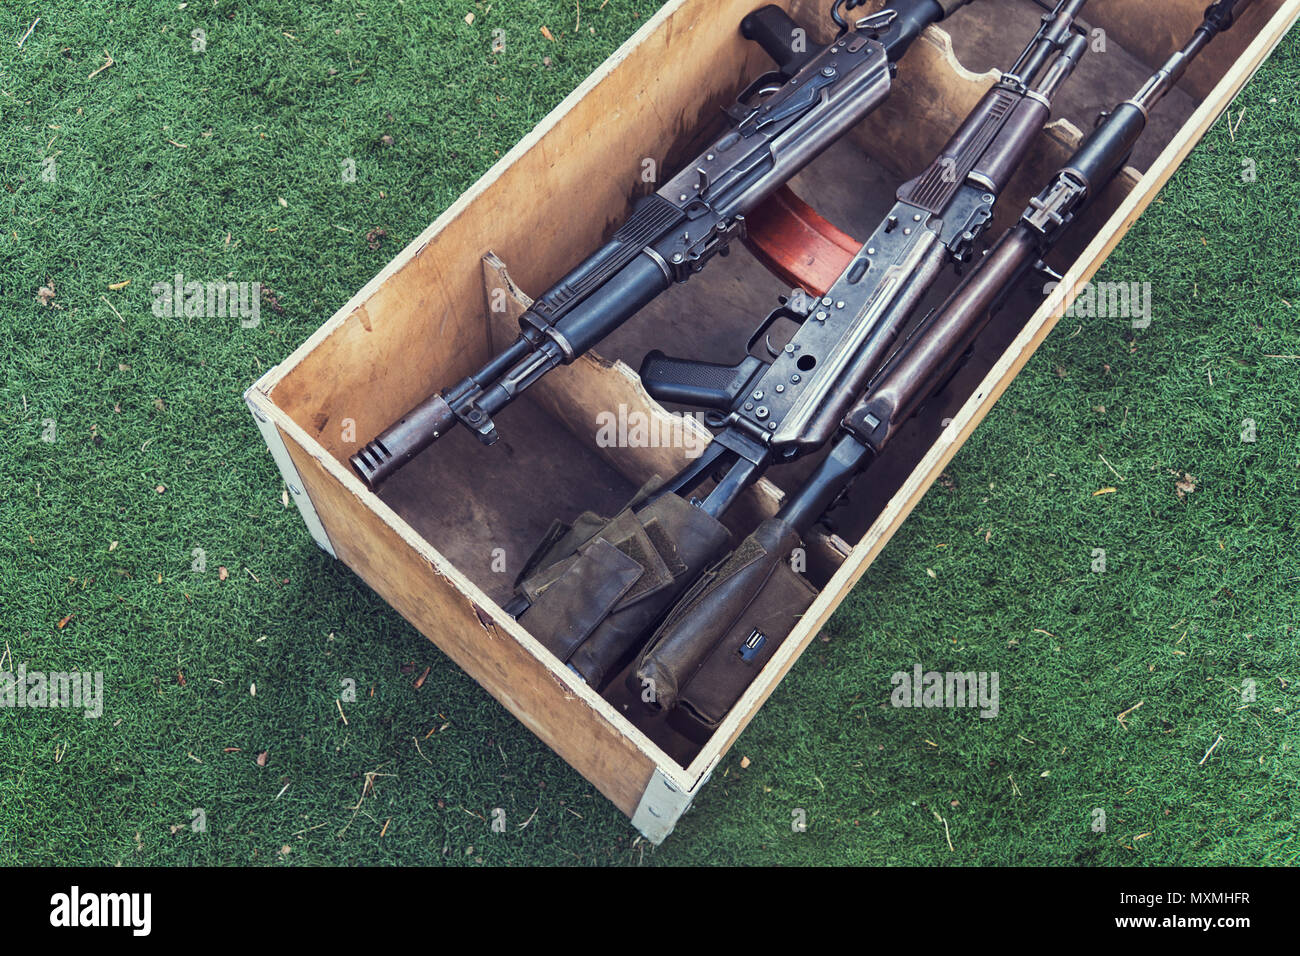 Fort de l'armée de munitions avec fusil AK47 et des munitions. Une arme automatique avec un tireur portée dans le bois fort Banque D'Images